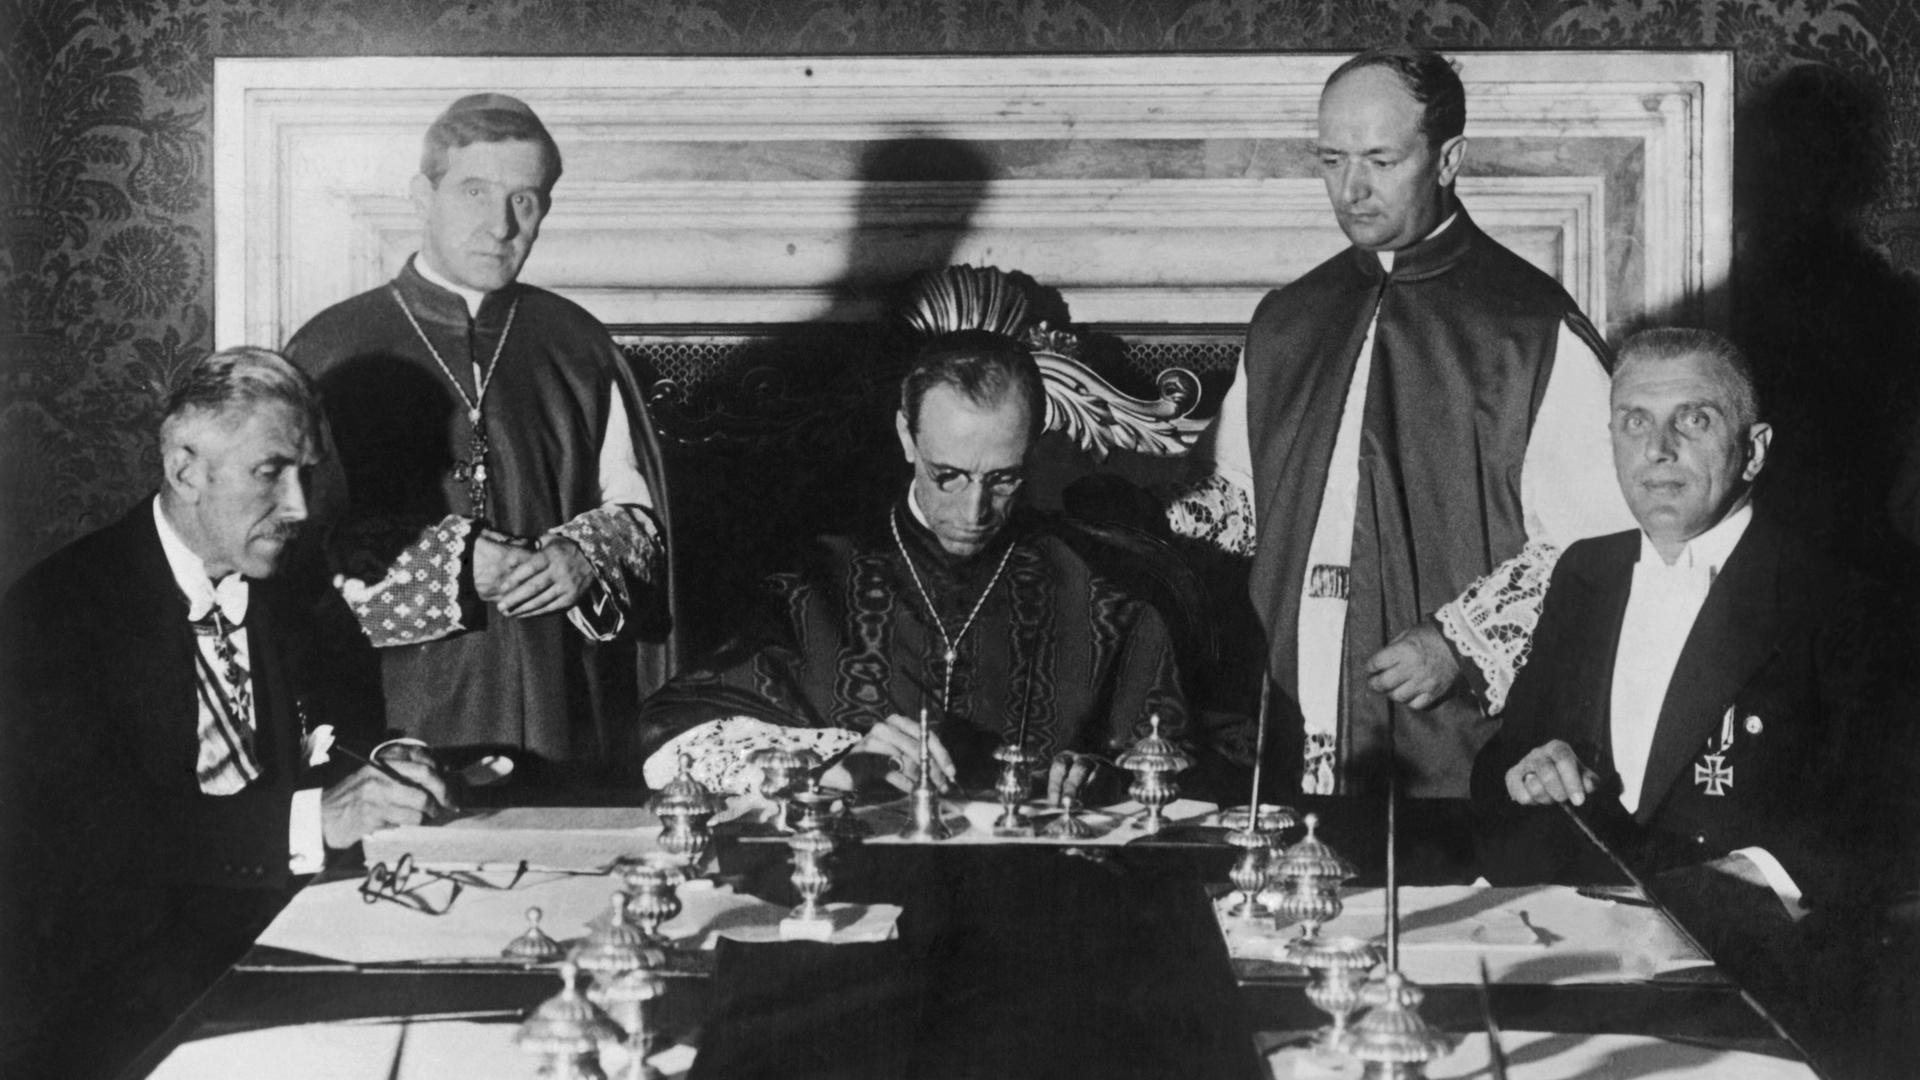 Bei der Unterzeichnung des Reichskonkordat zwischen dem Deutschen Reich und dem Heiligen Stuhl am 20. Juli 1933 im Vatikan sitzen (v.l.n.r) Vizekanzler Franz von Papen, Kardinalstaatssekretär Eugenio Pacelli und Ministerialdirektor Rudolf Buttmann an einem Tisch.